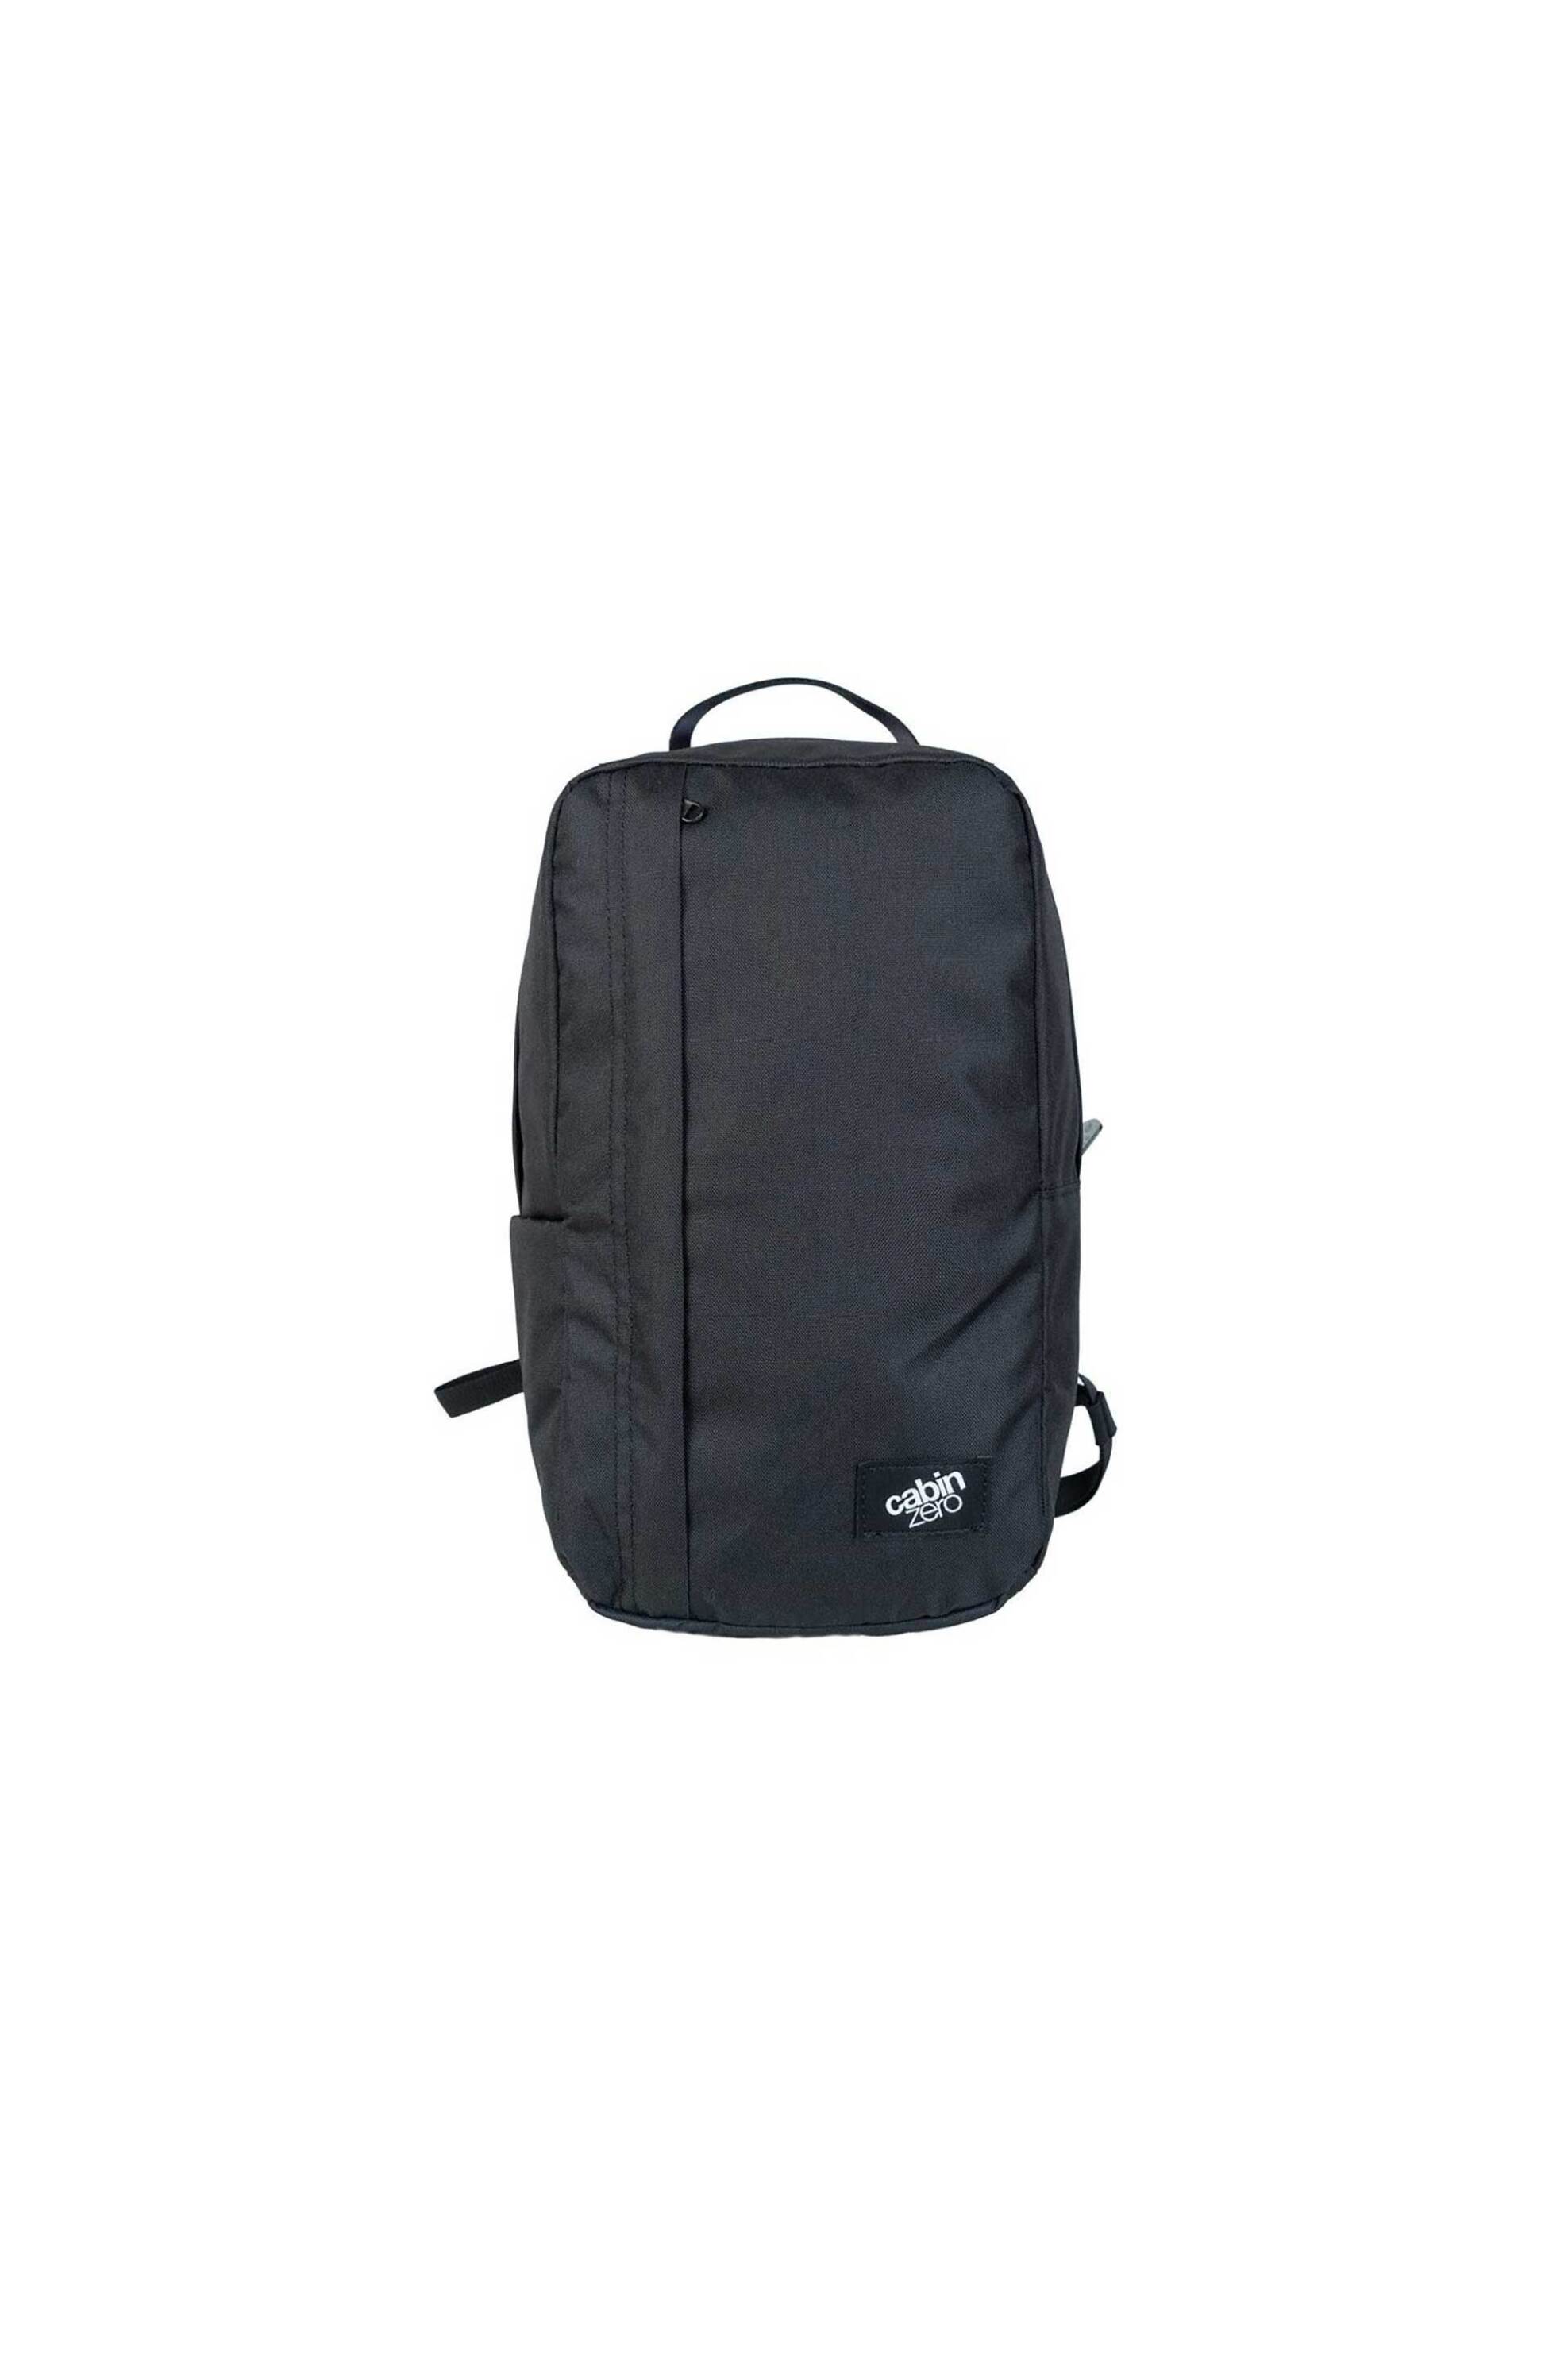 Ανδρική Μόδα > Ανδρικές Τσάντες > Ανδρικά Σακίδια & Backpacks Cabin Zero unisex backpack μονόχρωμο με logo patch "Classic Fight" - CZ231201